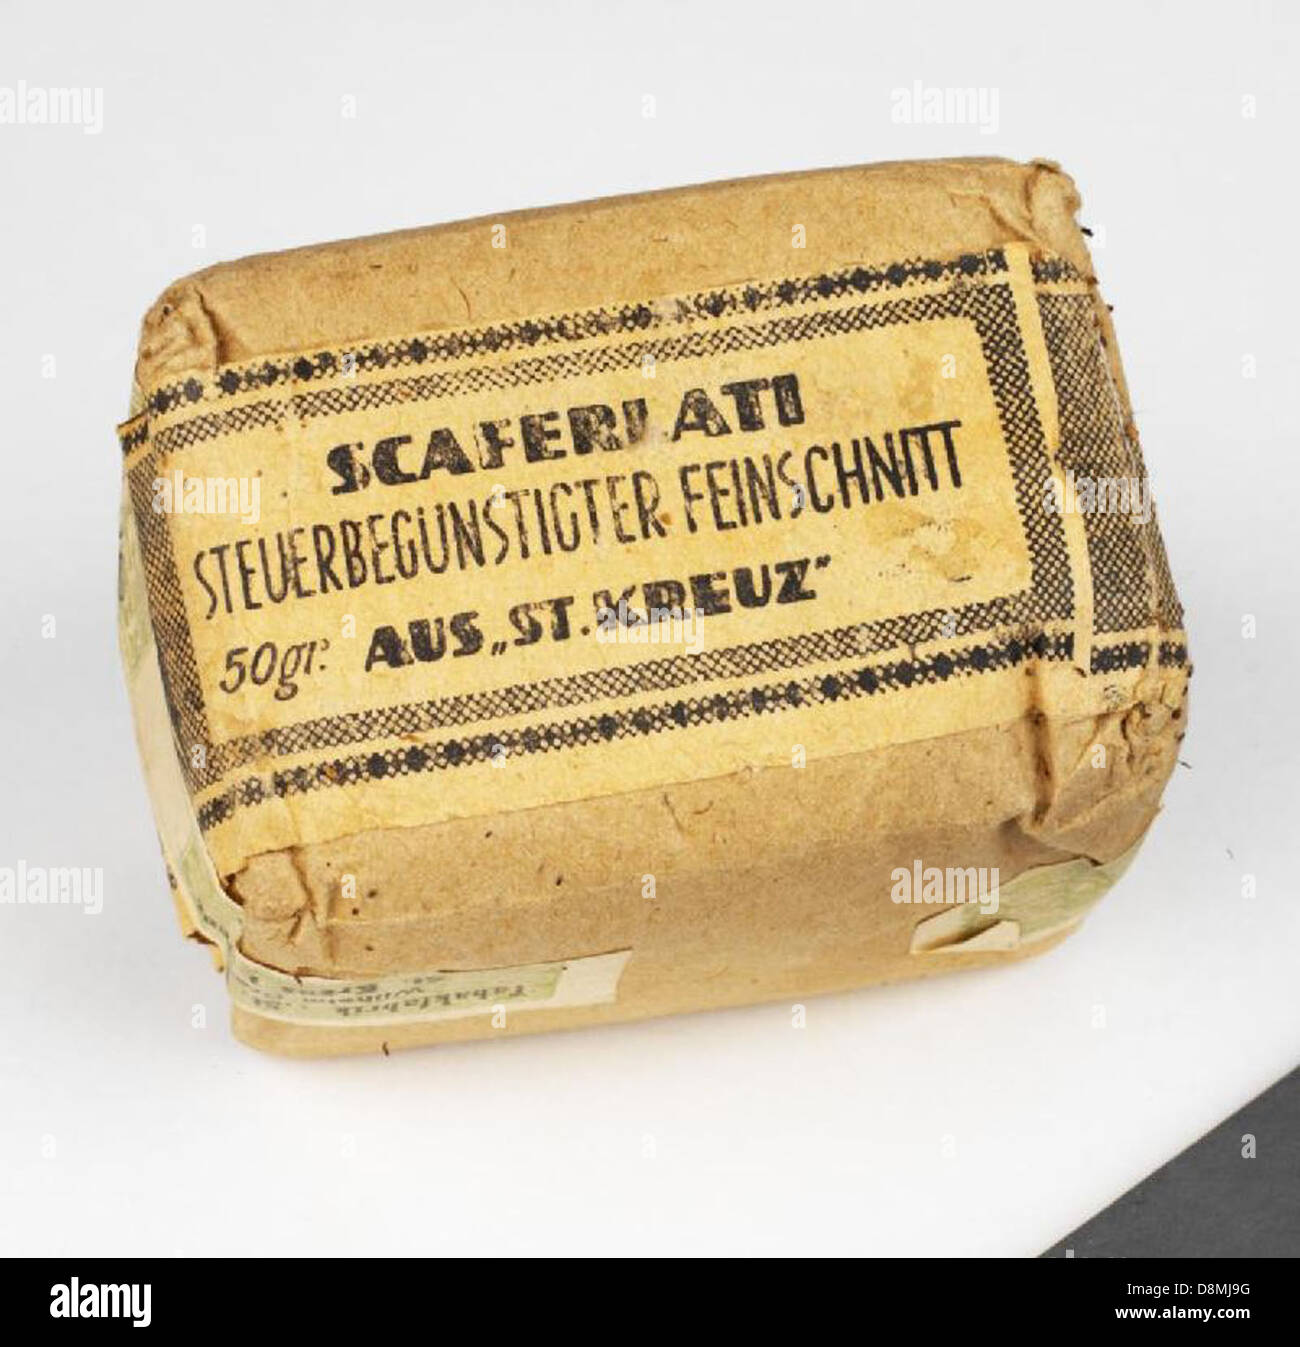 Paquet de scaferlati tabac. Seconde Guerre mondiale la France occupée alors par les associations. Ep4316. Banque D'Images